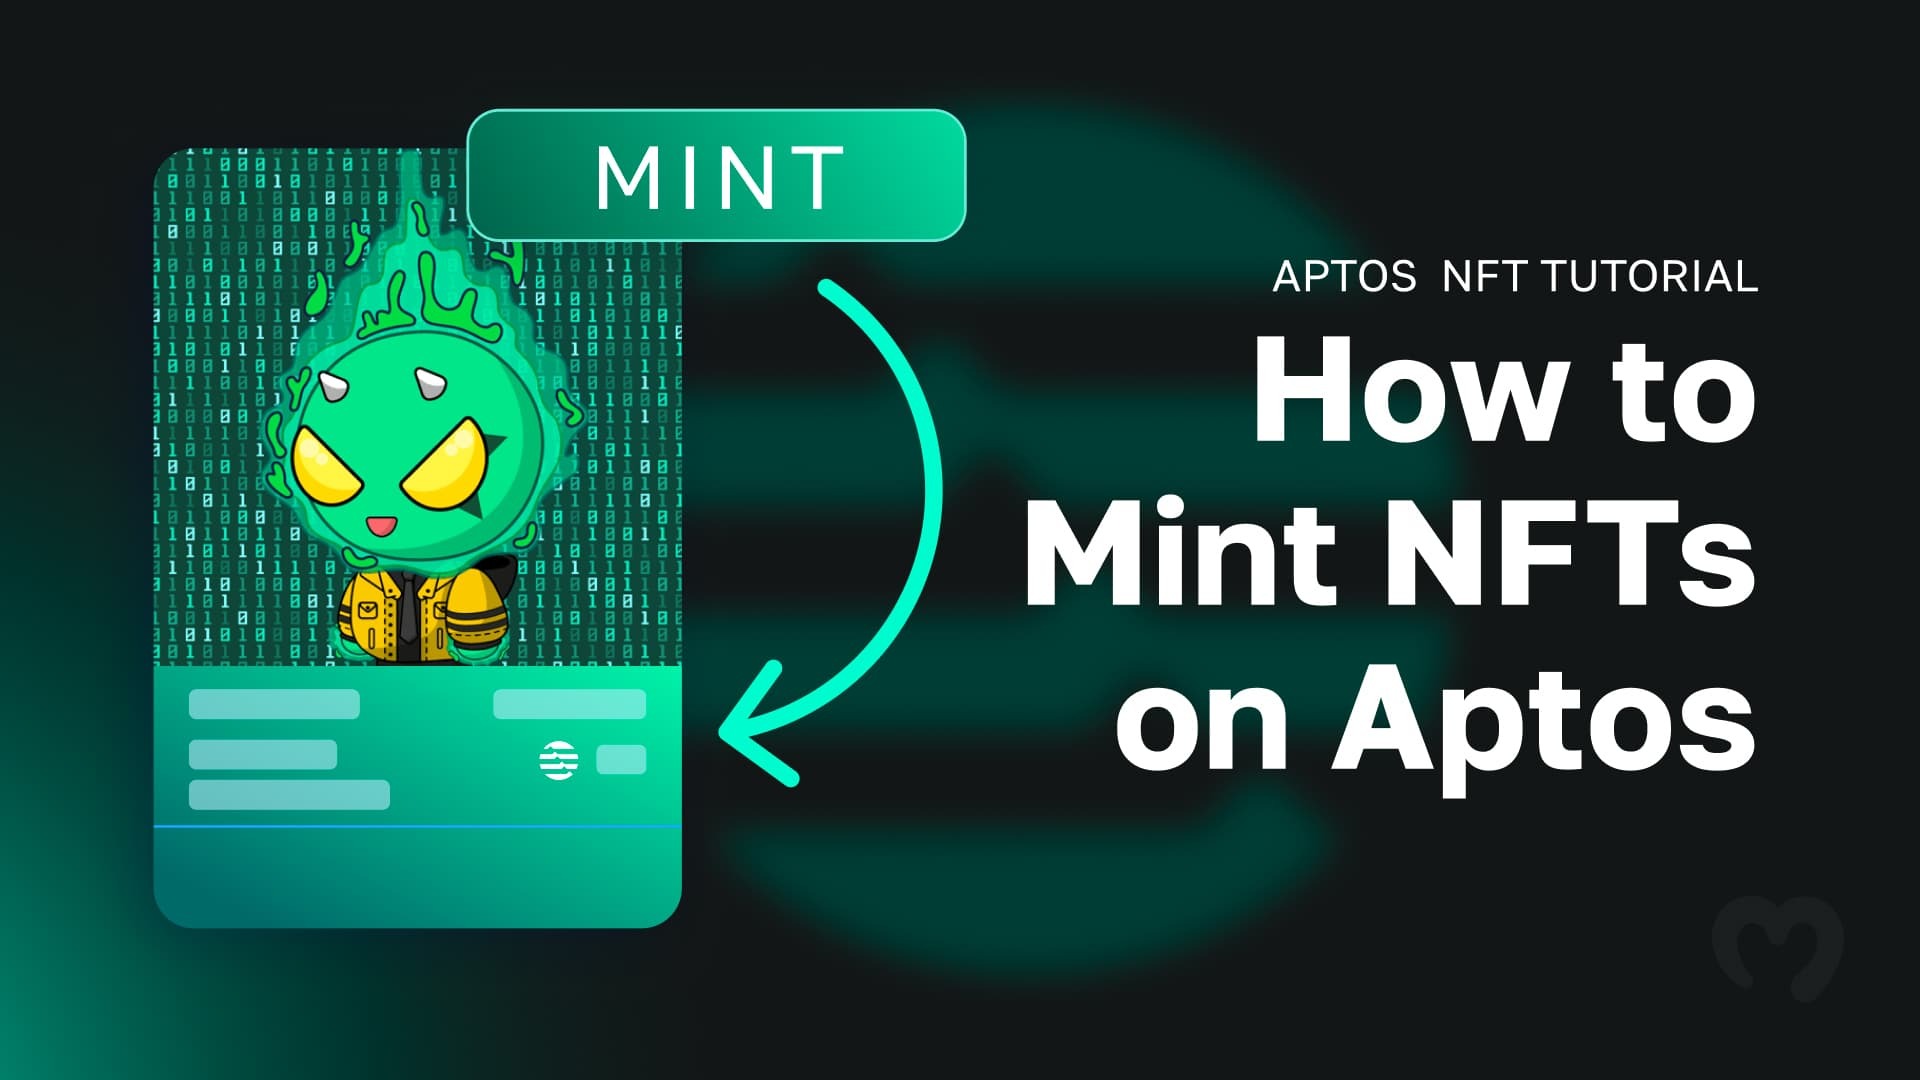 Aptos NFT Tutorial - How to Mint NFTs on Aptos